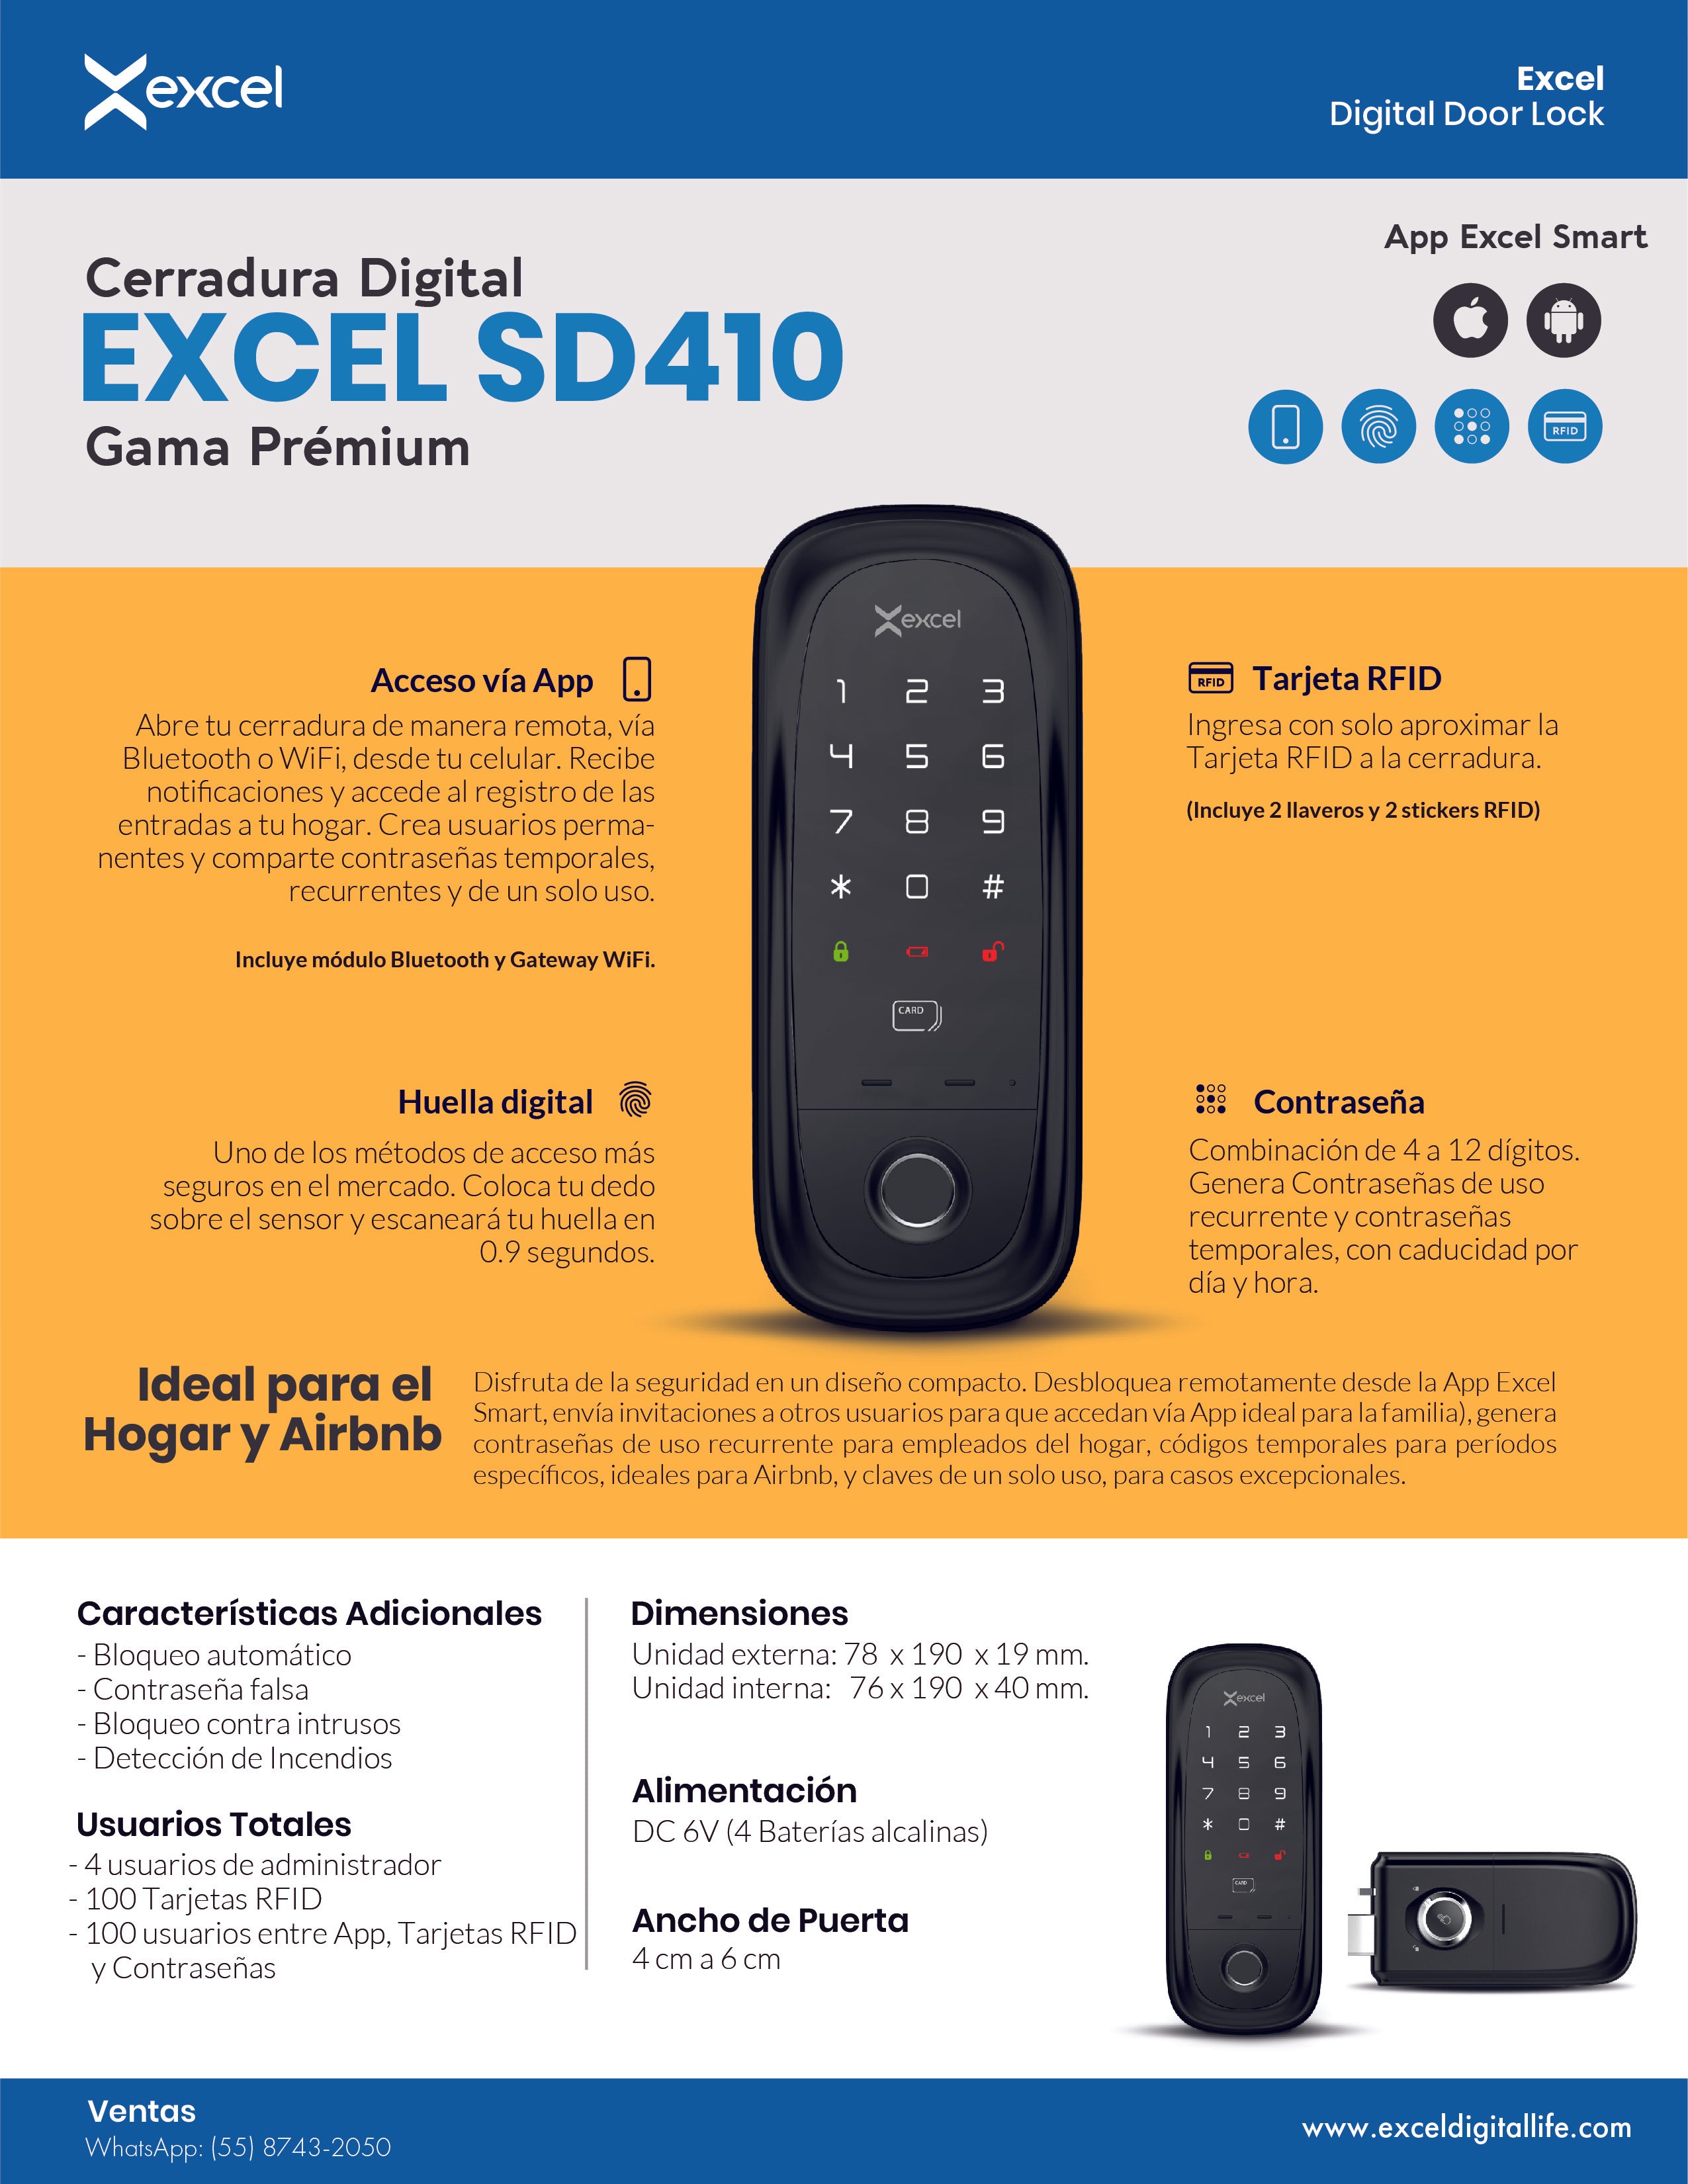 Cerradura Electrónica Excel EXC-SD410